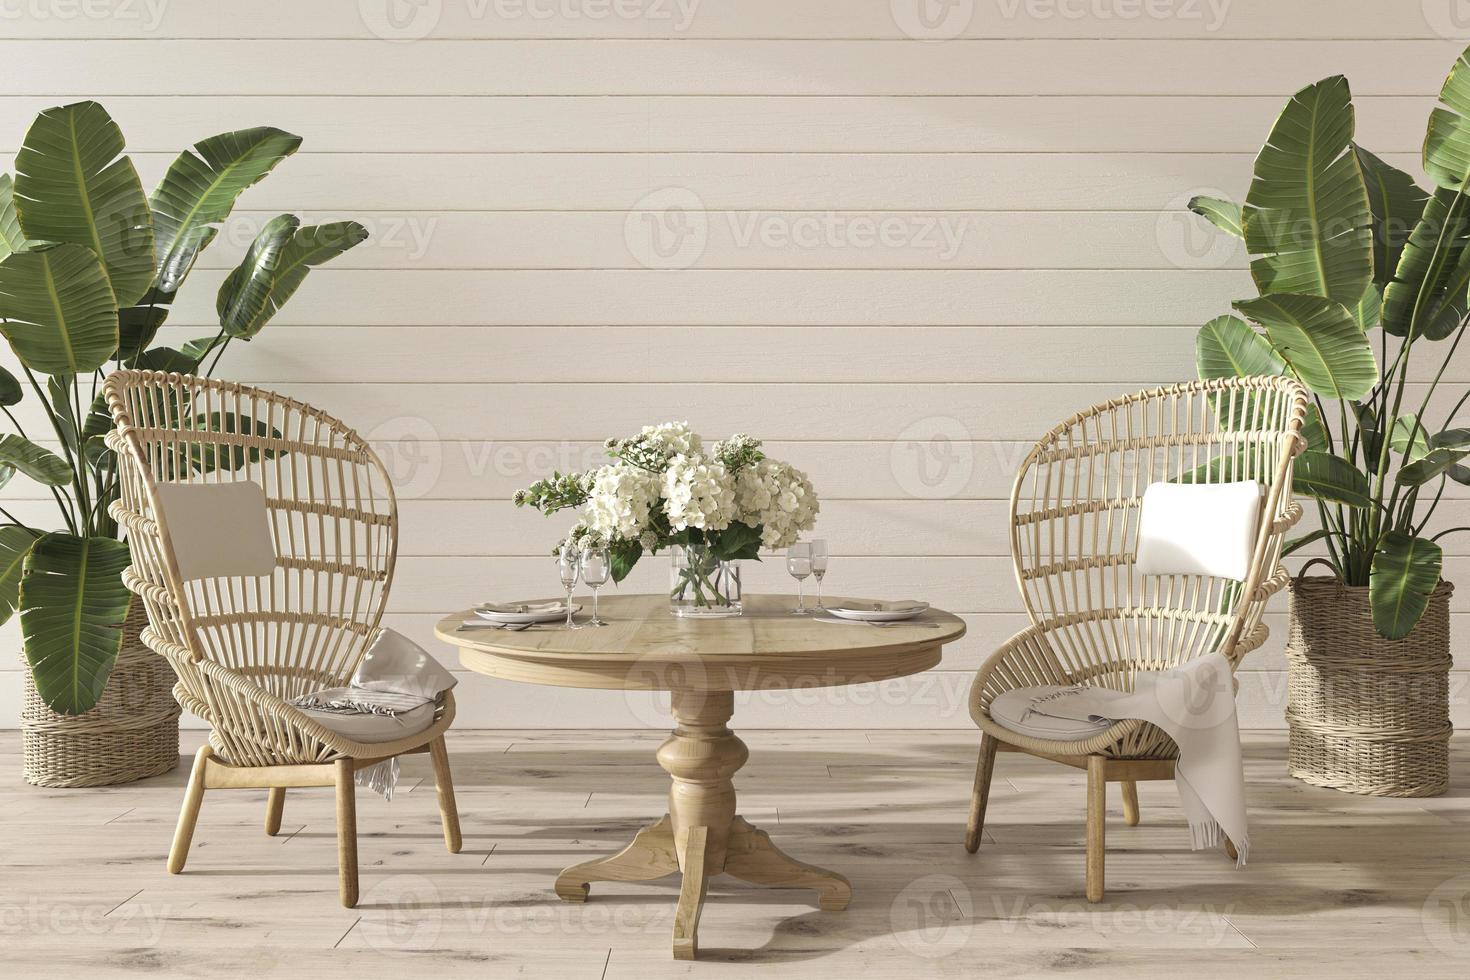 Esszimmer im Küstendesign mit Tisch und Korbmöbeln. weiße wand des modells im gemütlichen wohninnenhintergrund. Hampton-Stil 3D-Render-Illustration. foto